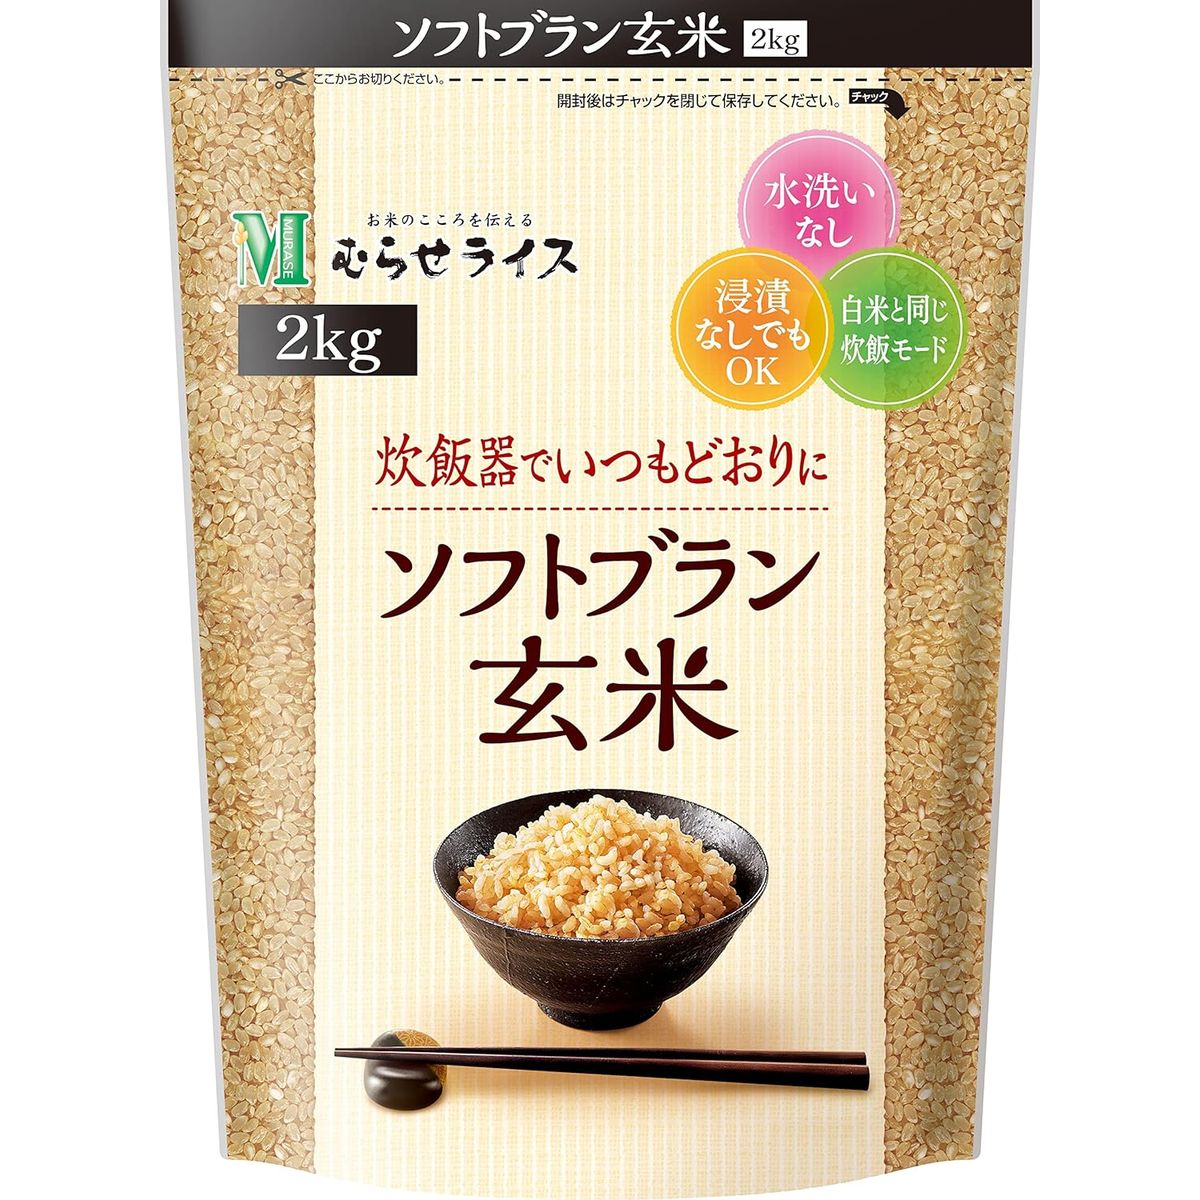 ○ソフトブラン玄米 2kg